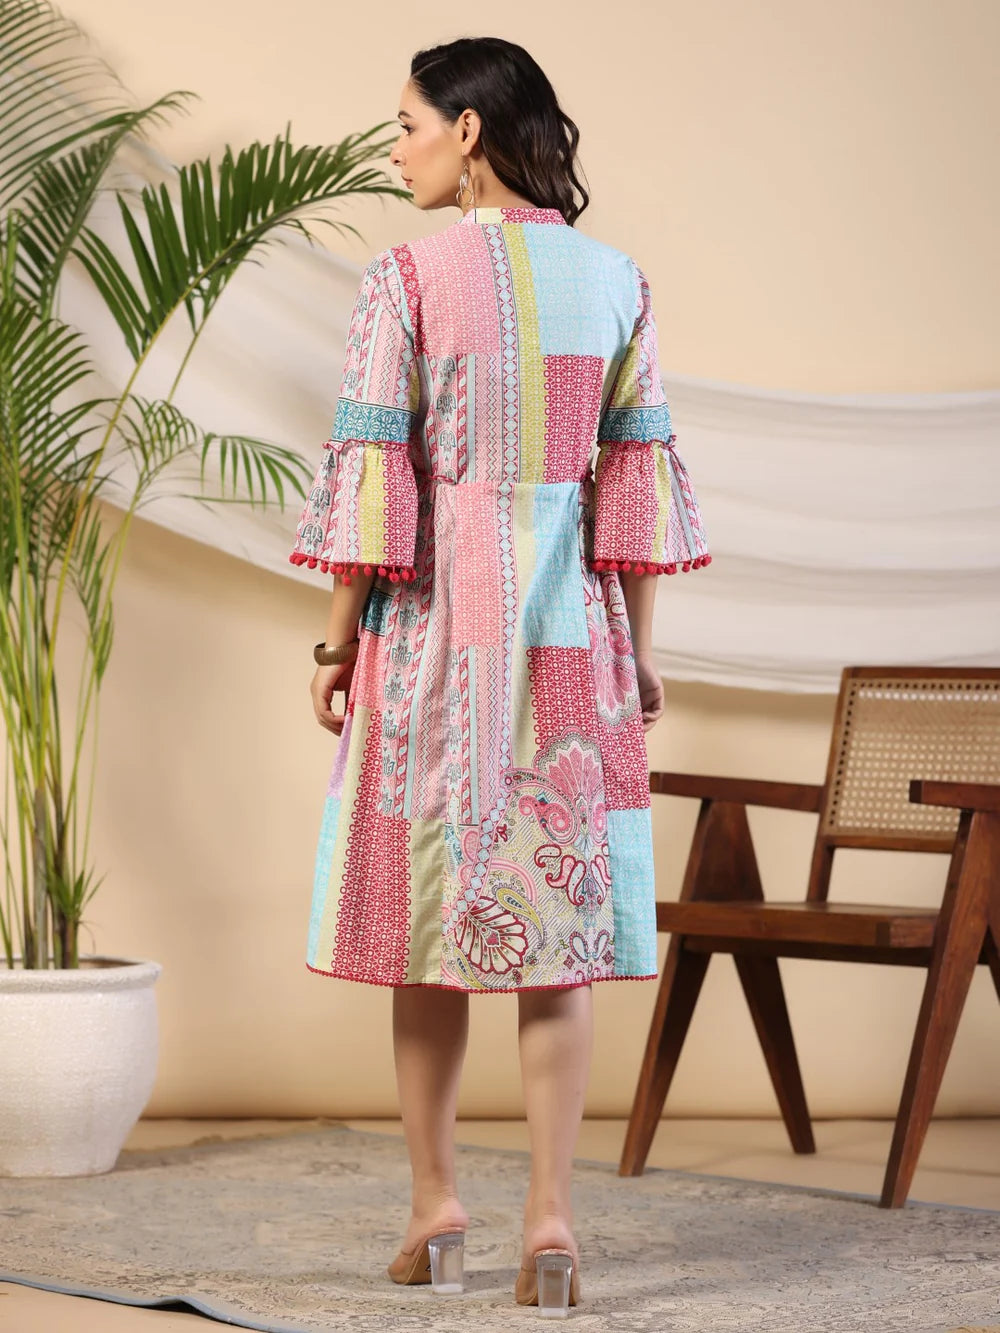 Vibrant Chic: Multi-Colored Cotton Cambric Printed Dress